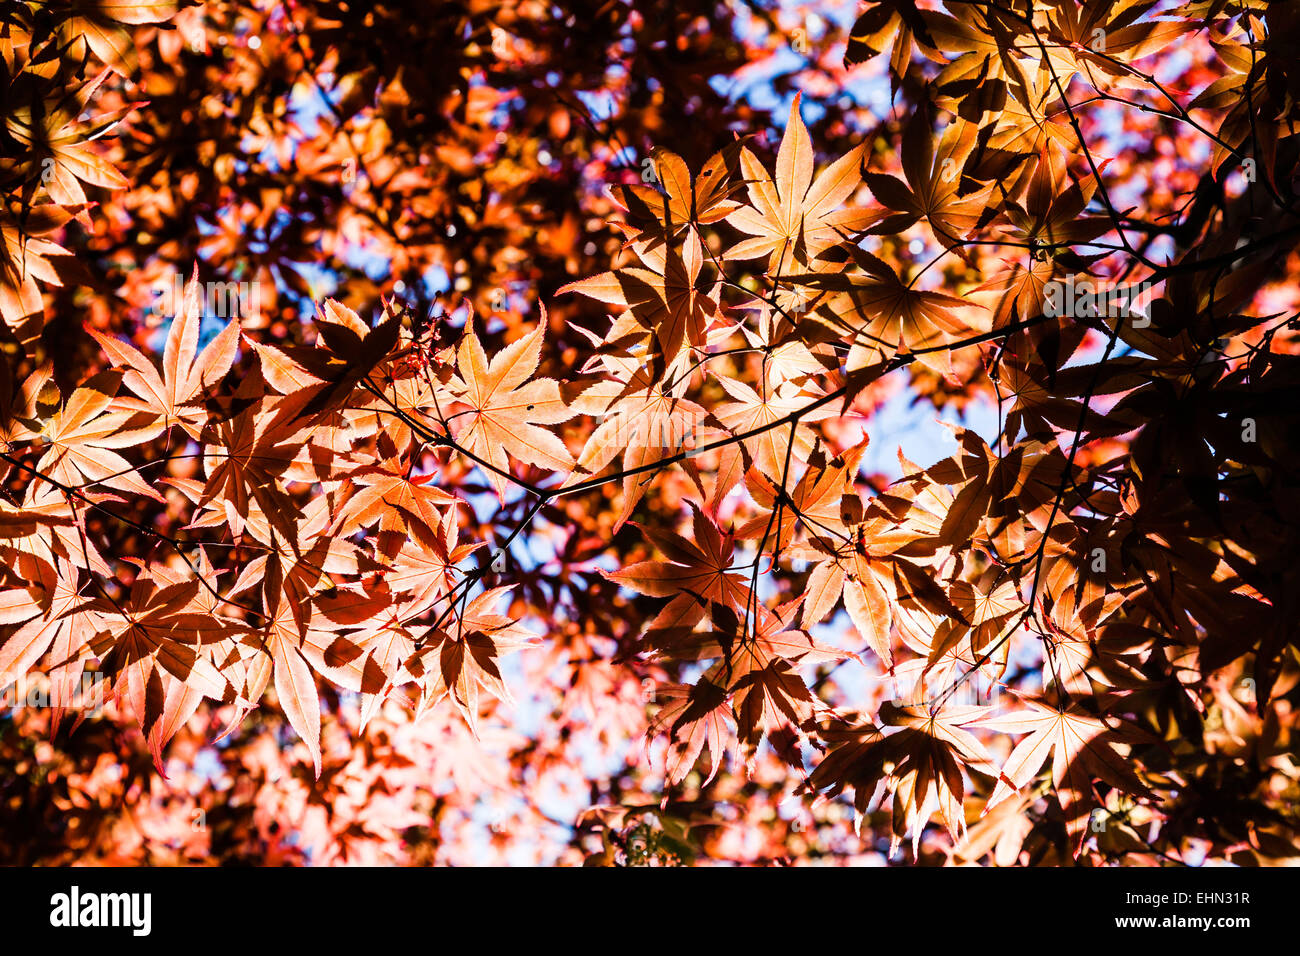 Japanese maple in autumn. Stock Photo